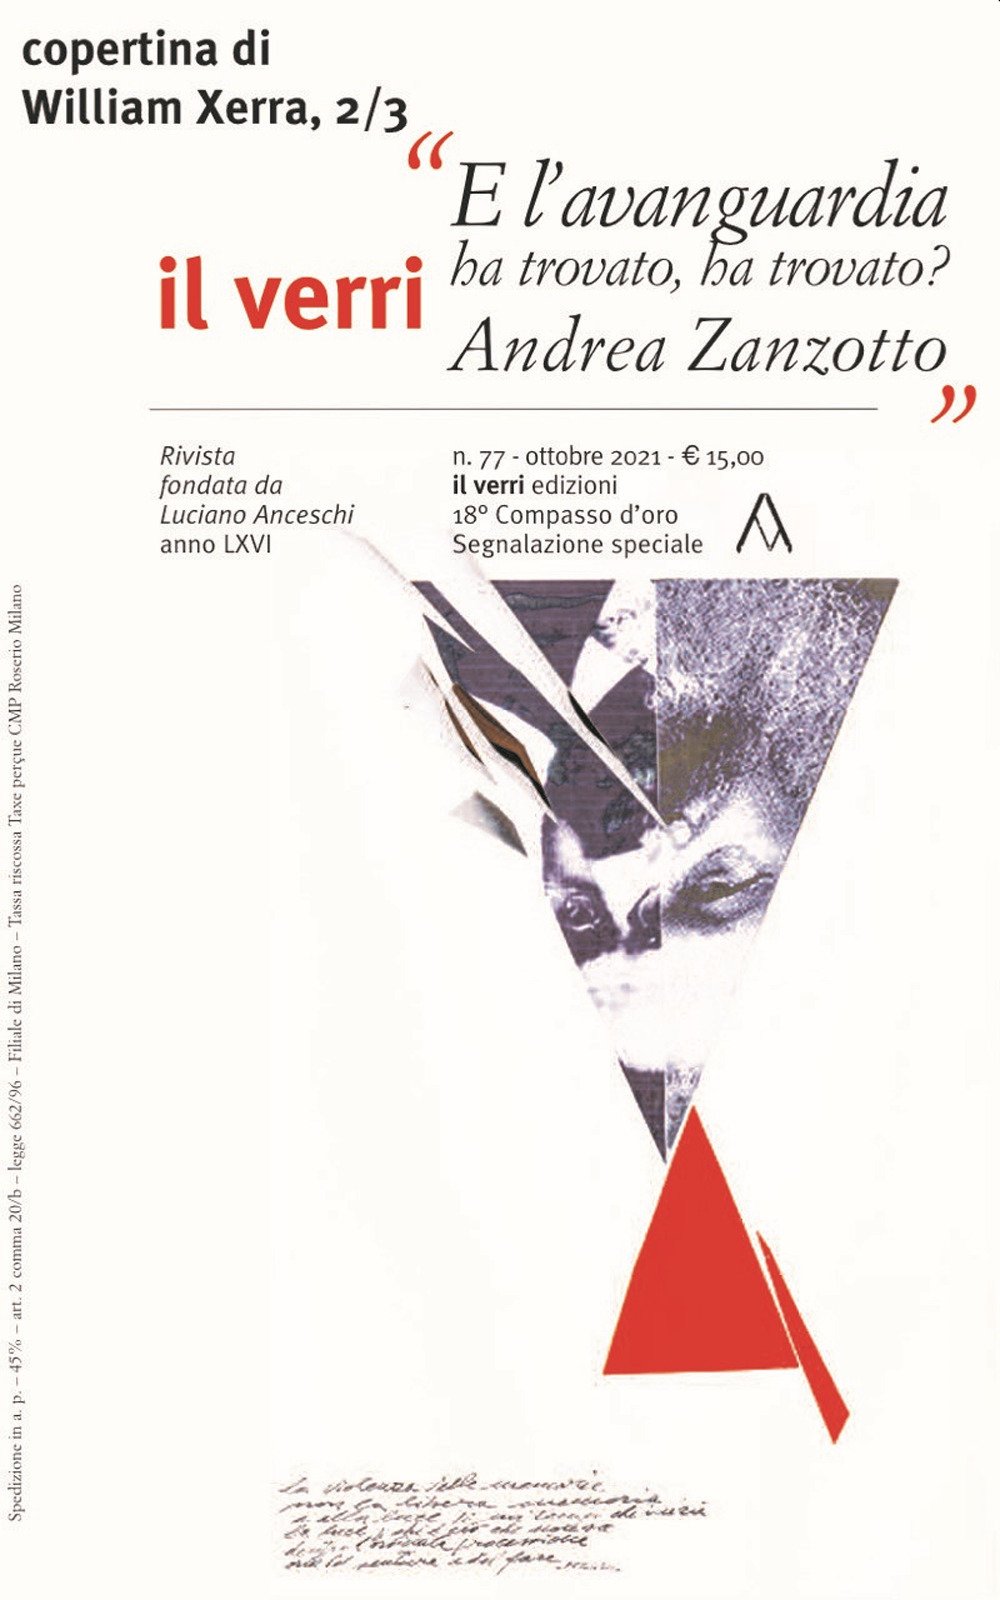 Il Verri (2021). Vol. 77: Andrea Zanzotto. E l'avanguardia ha trovato, ha trovato?